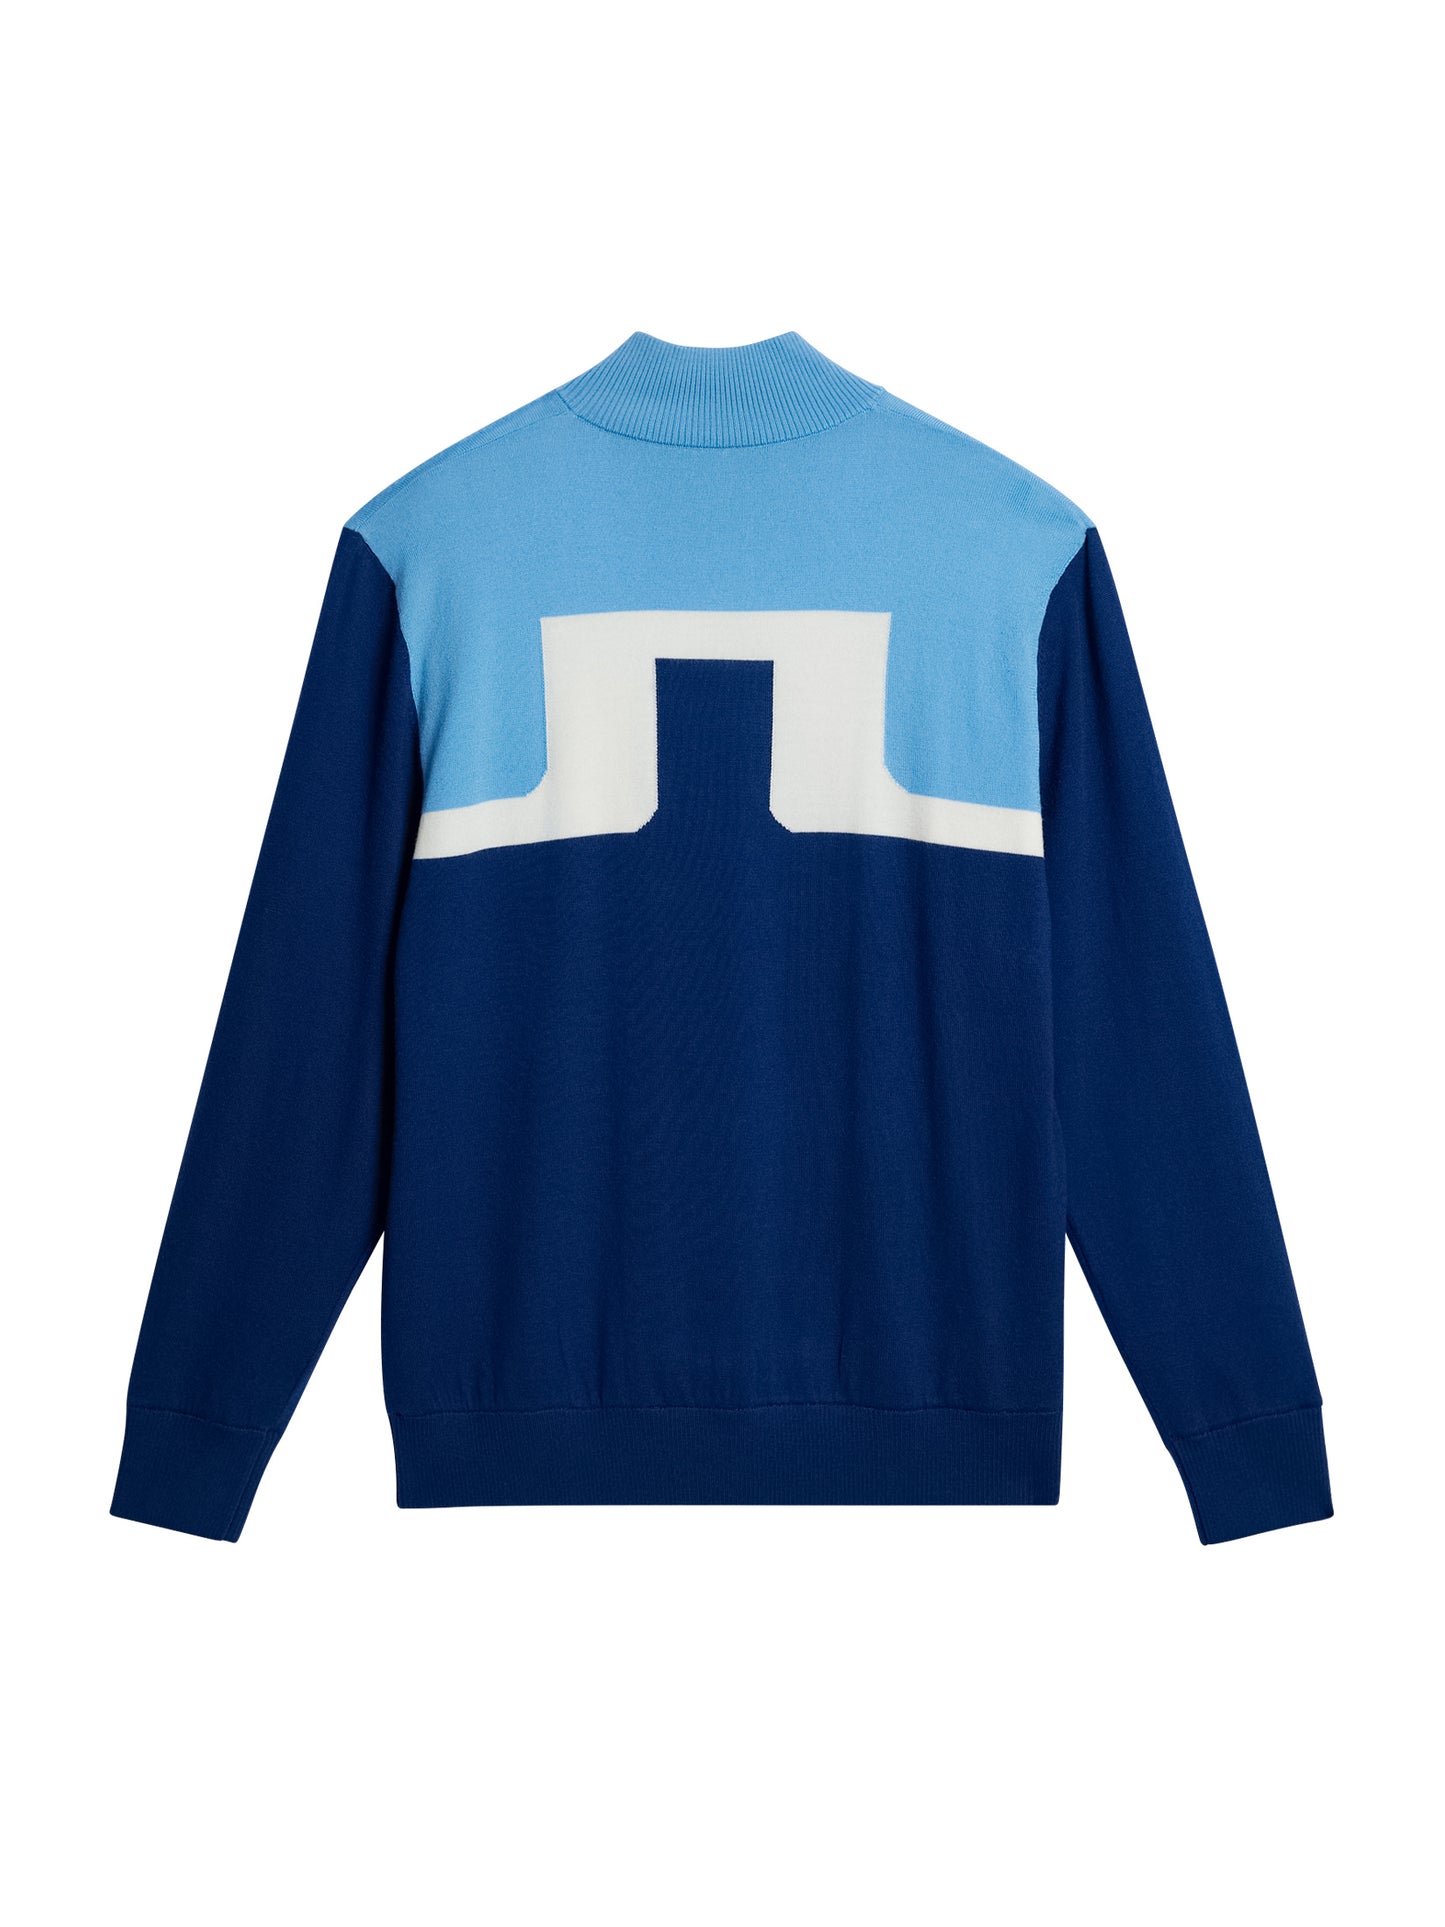 Jeff Windbreaker Sweater / Estate Blue